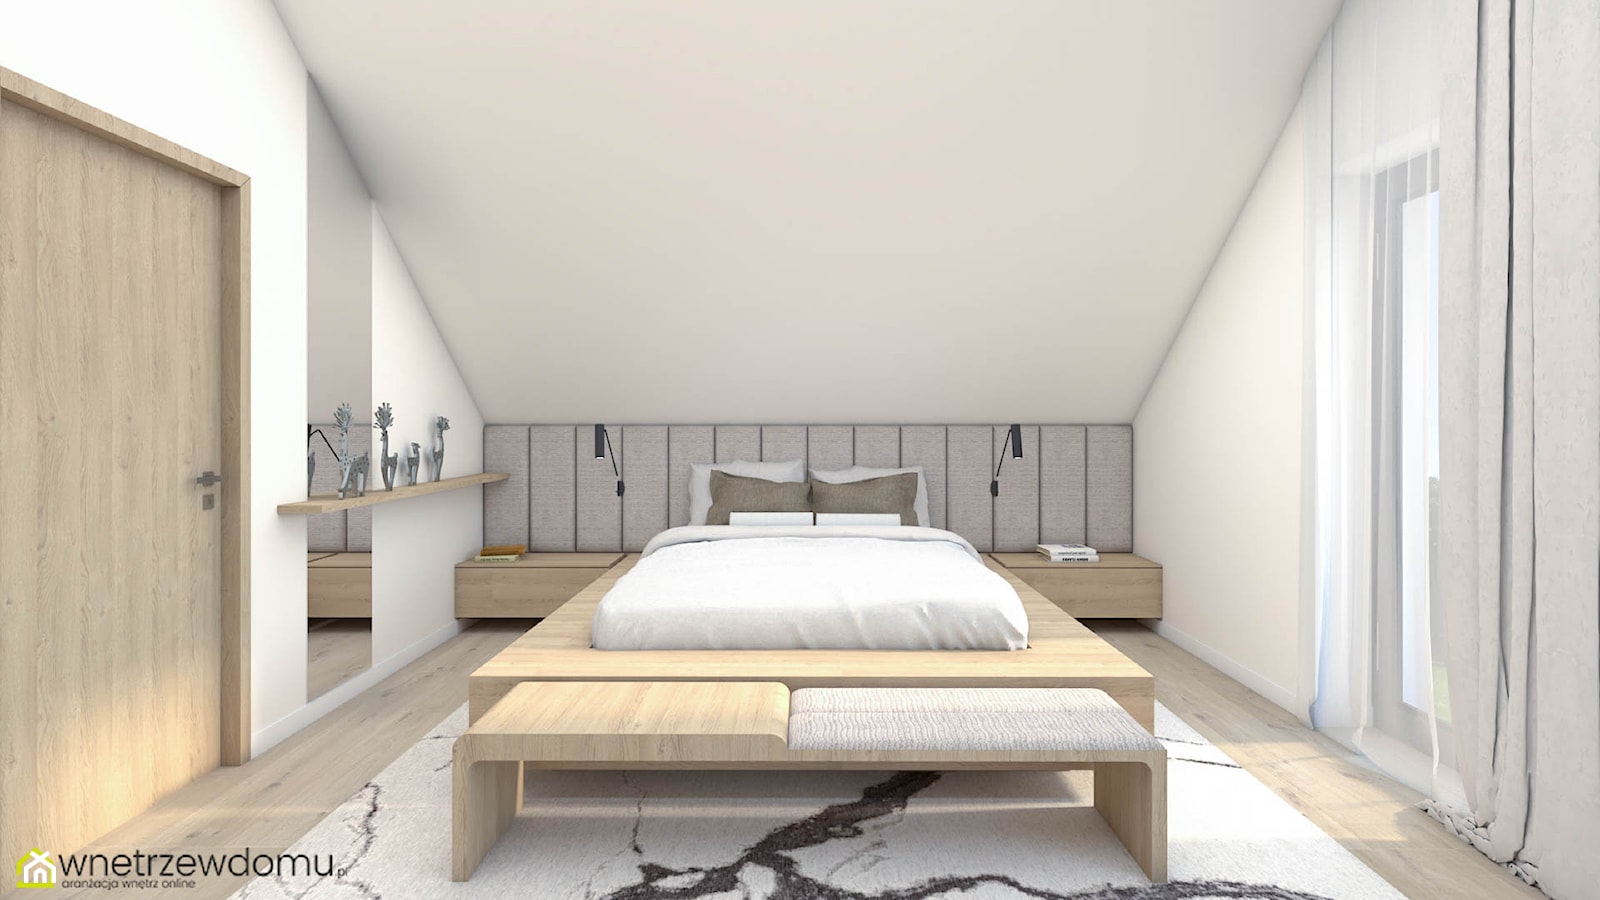 Jasna, przestronna sypialnia z pięknym drewnianym łóżkiem - zdjęcie od wnetrzewdomu - Homebook